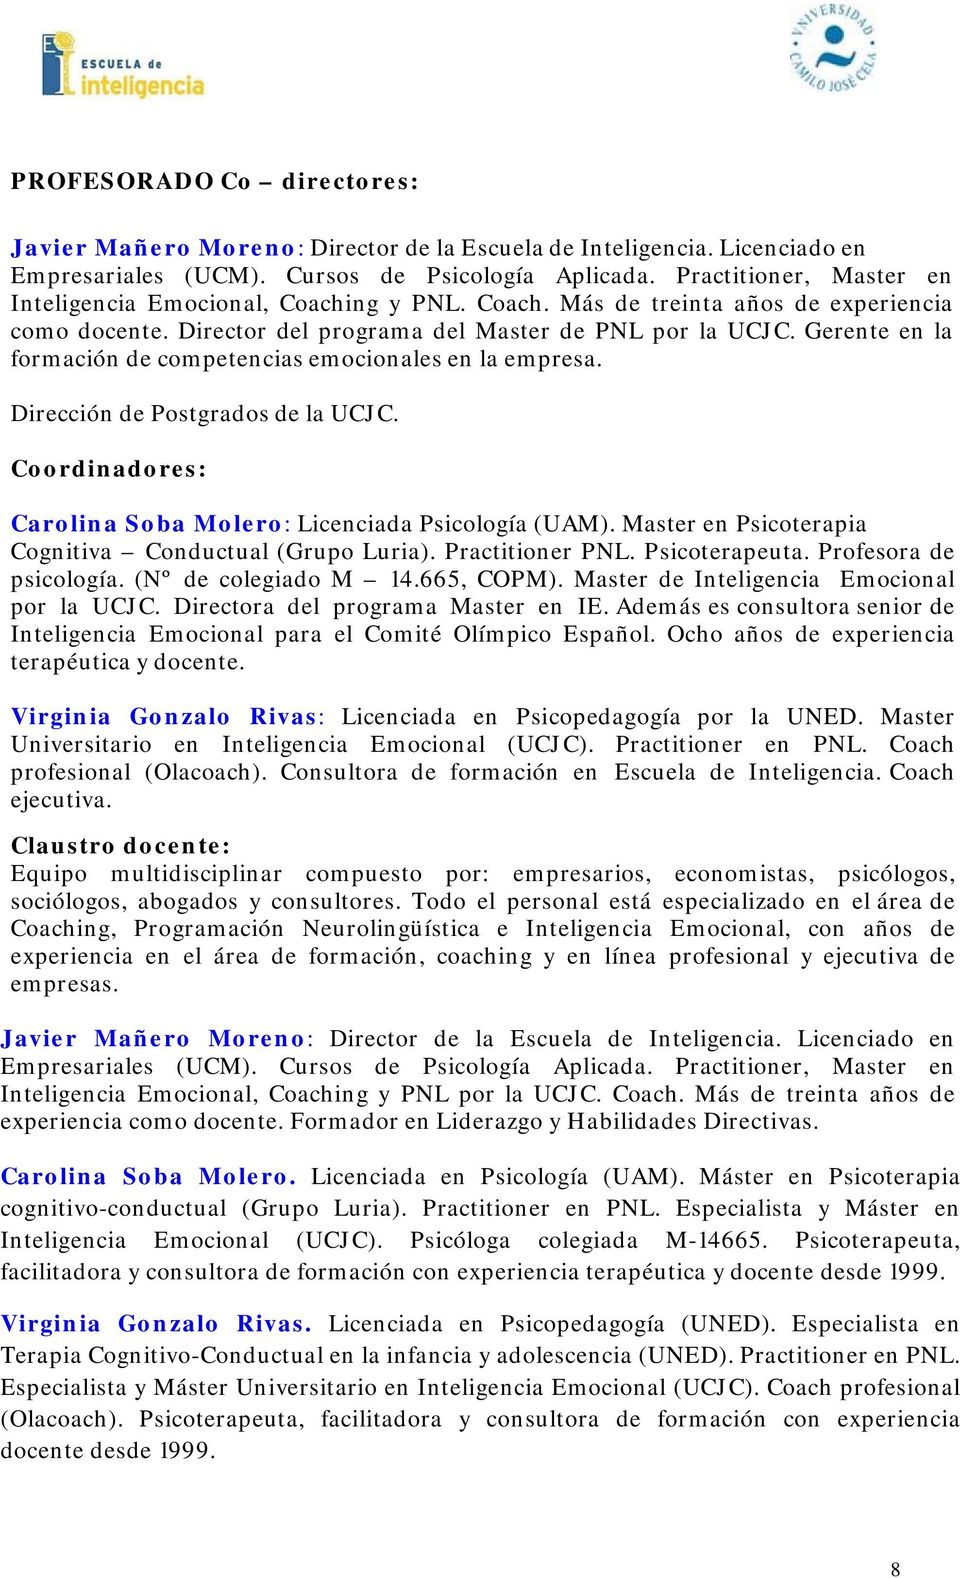 Postgrados de la UCJC Coordinadores: Carolina Soba Molero: Licenciada Psicología (UAM) Master en Psicoterapia Cognitiva Conductual (Grupo Luria) Practitioner PNL Psicoterapeuta Profesora de